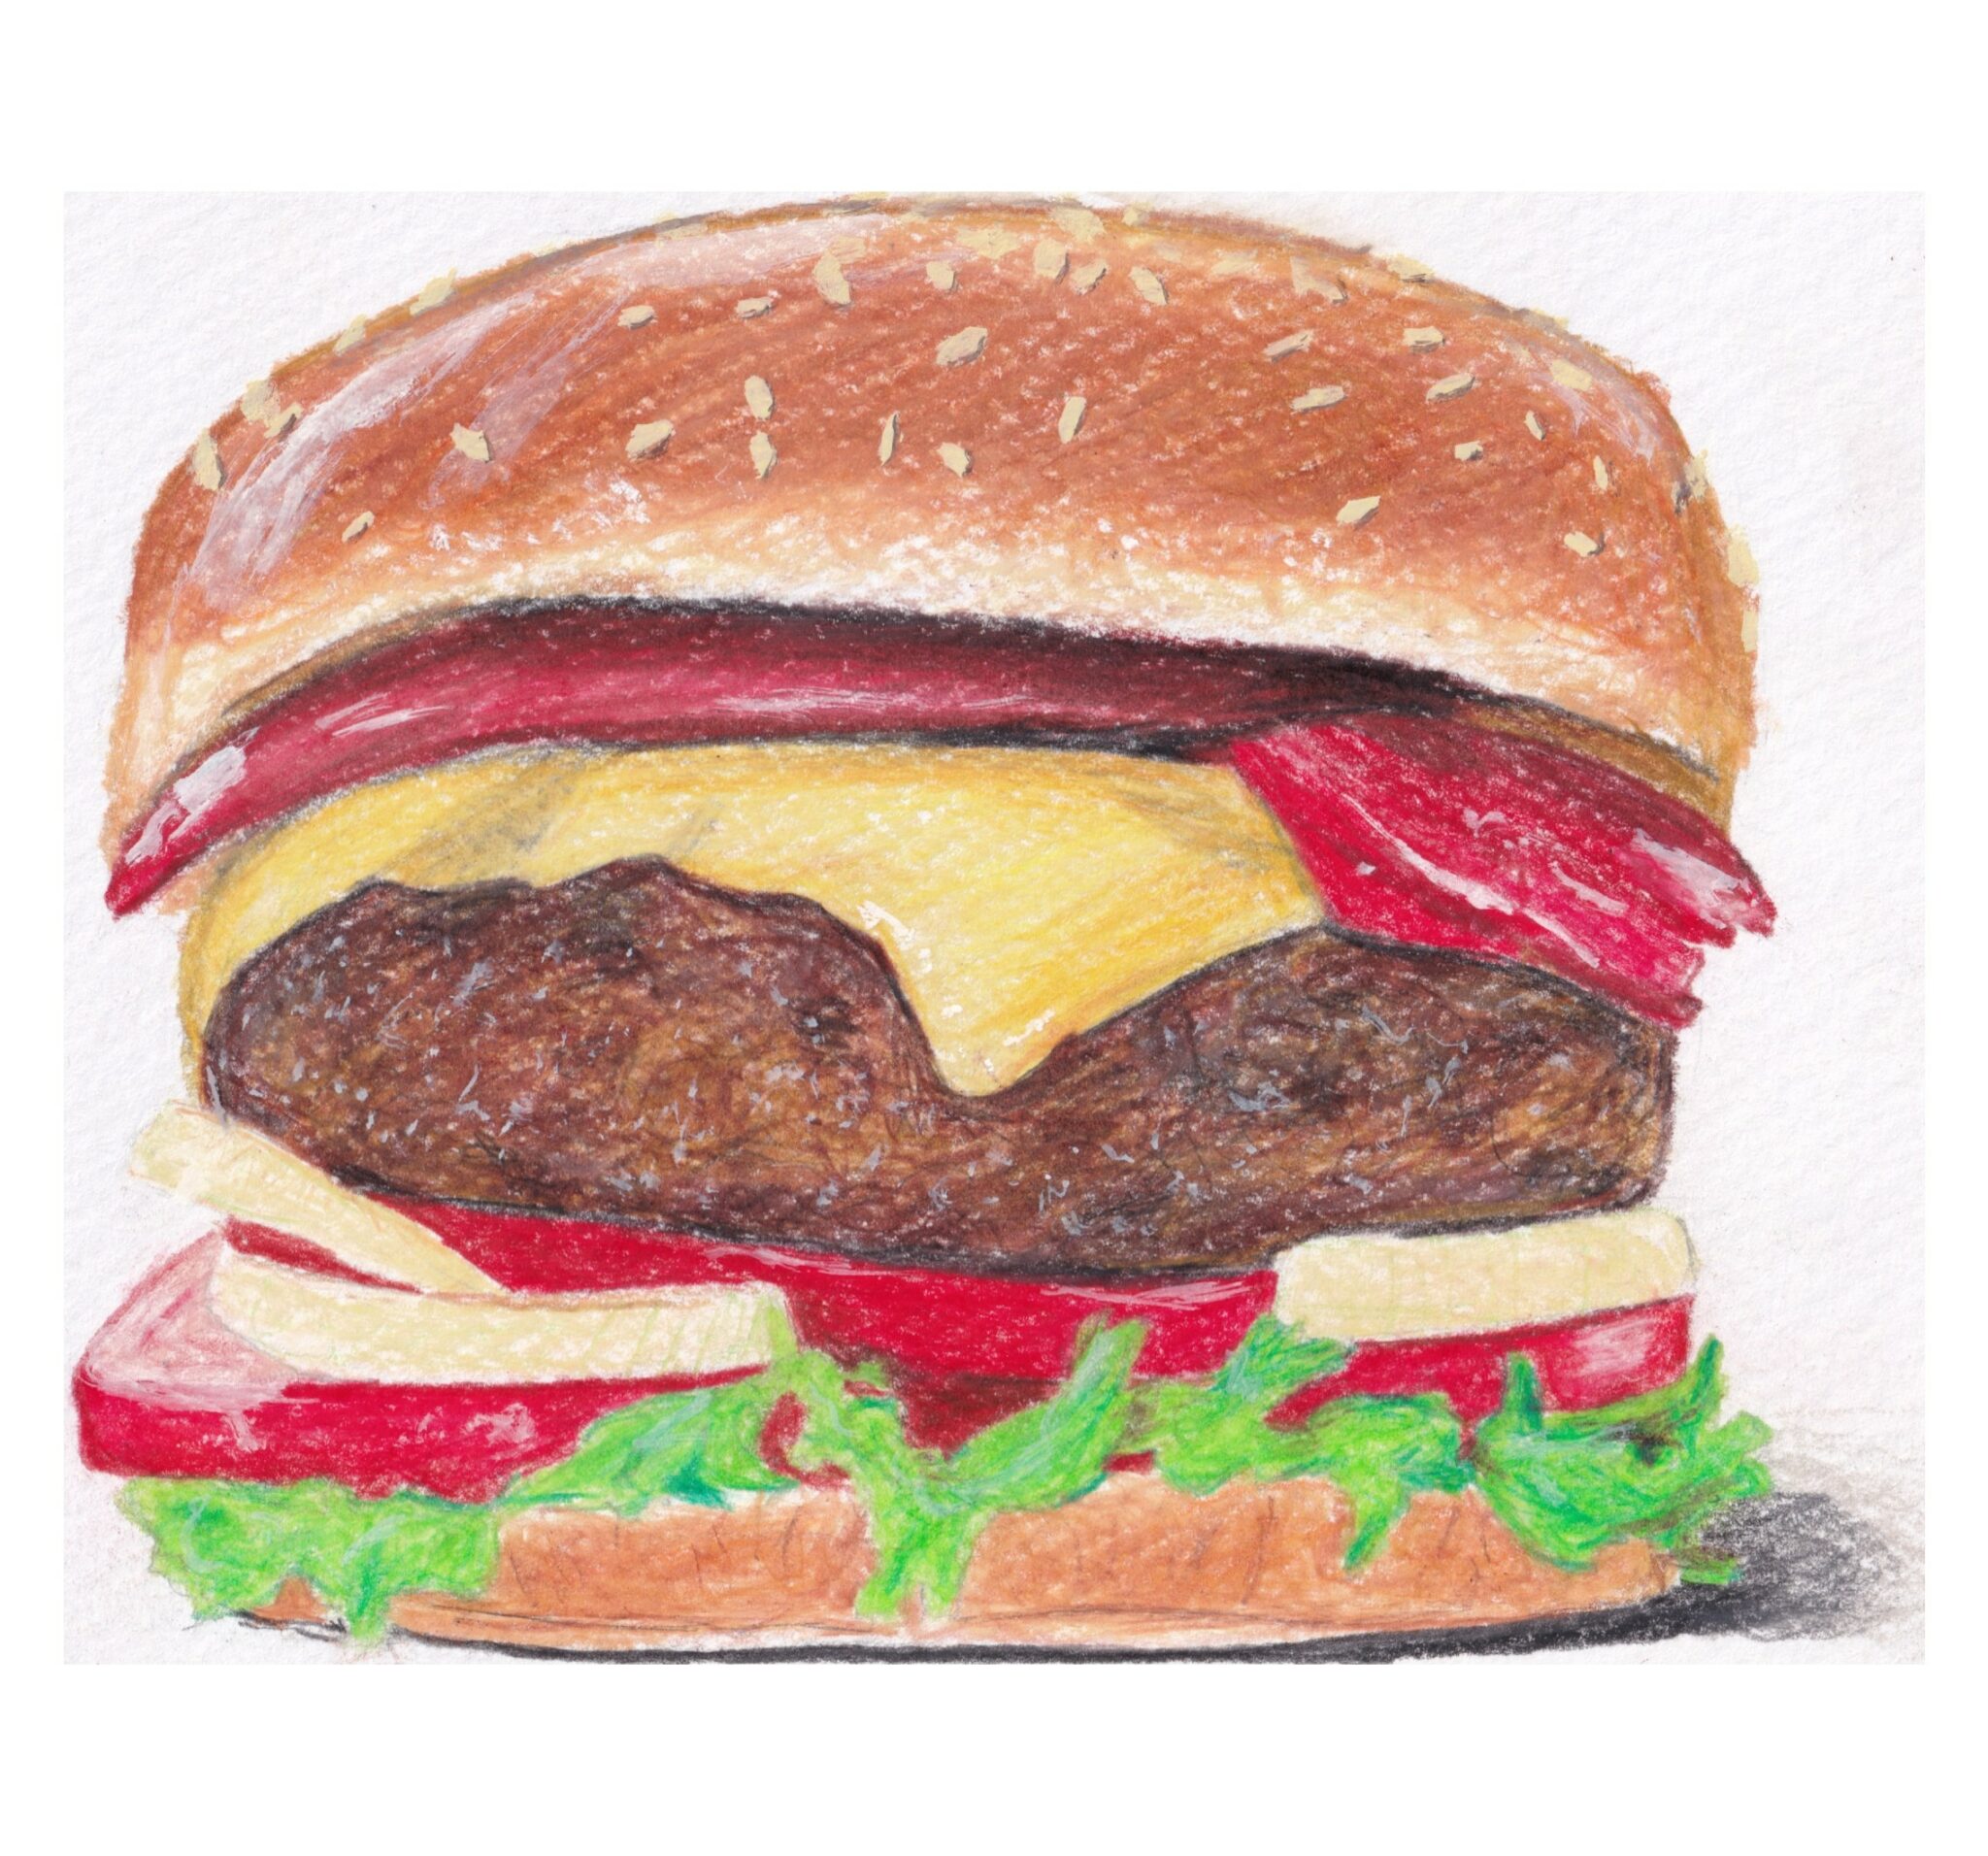 Burger Restaurant Kunst Malerei Buntstift Alice Obermeier Sulzbach an der Murr Rems Murr Kreis